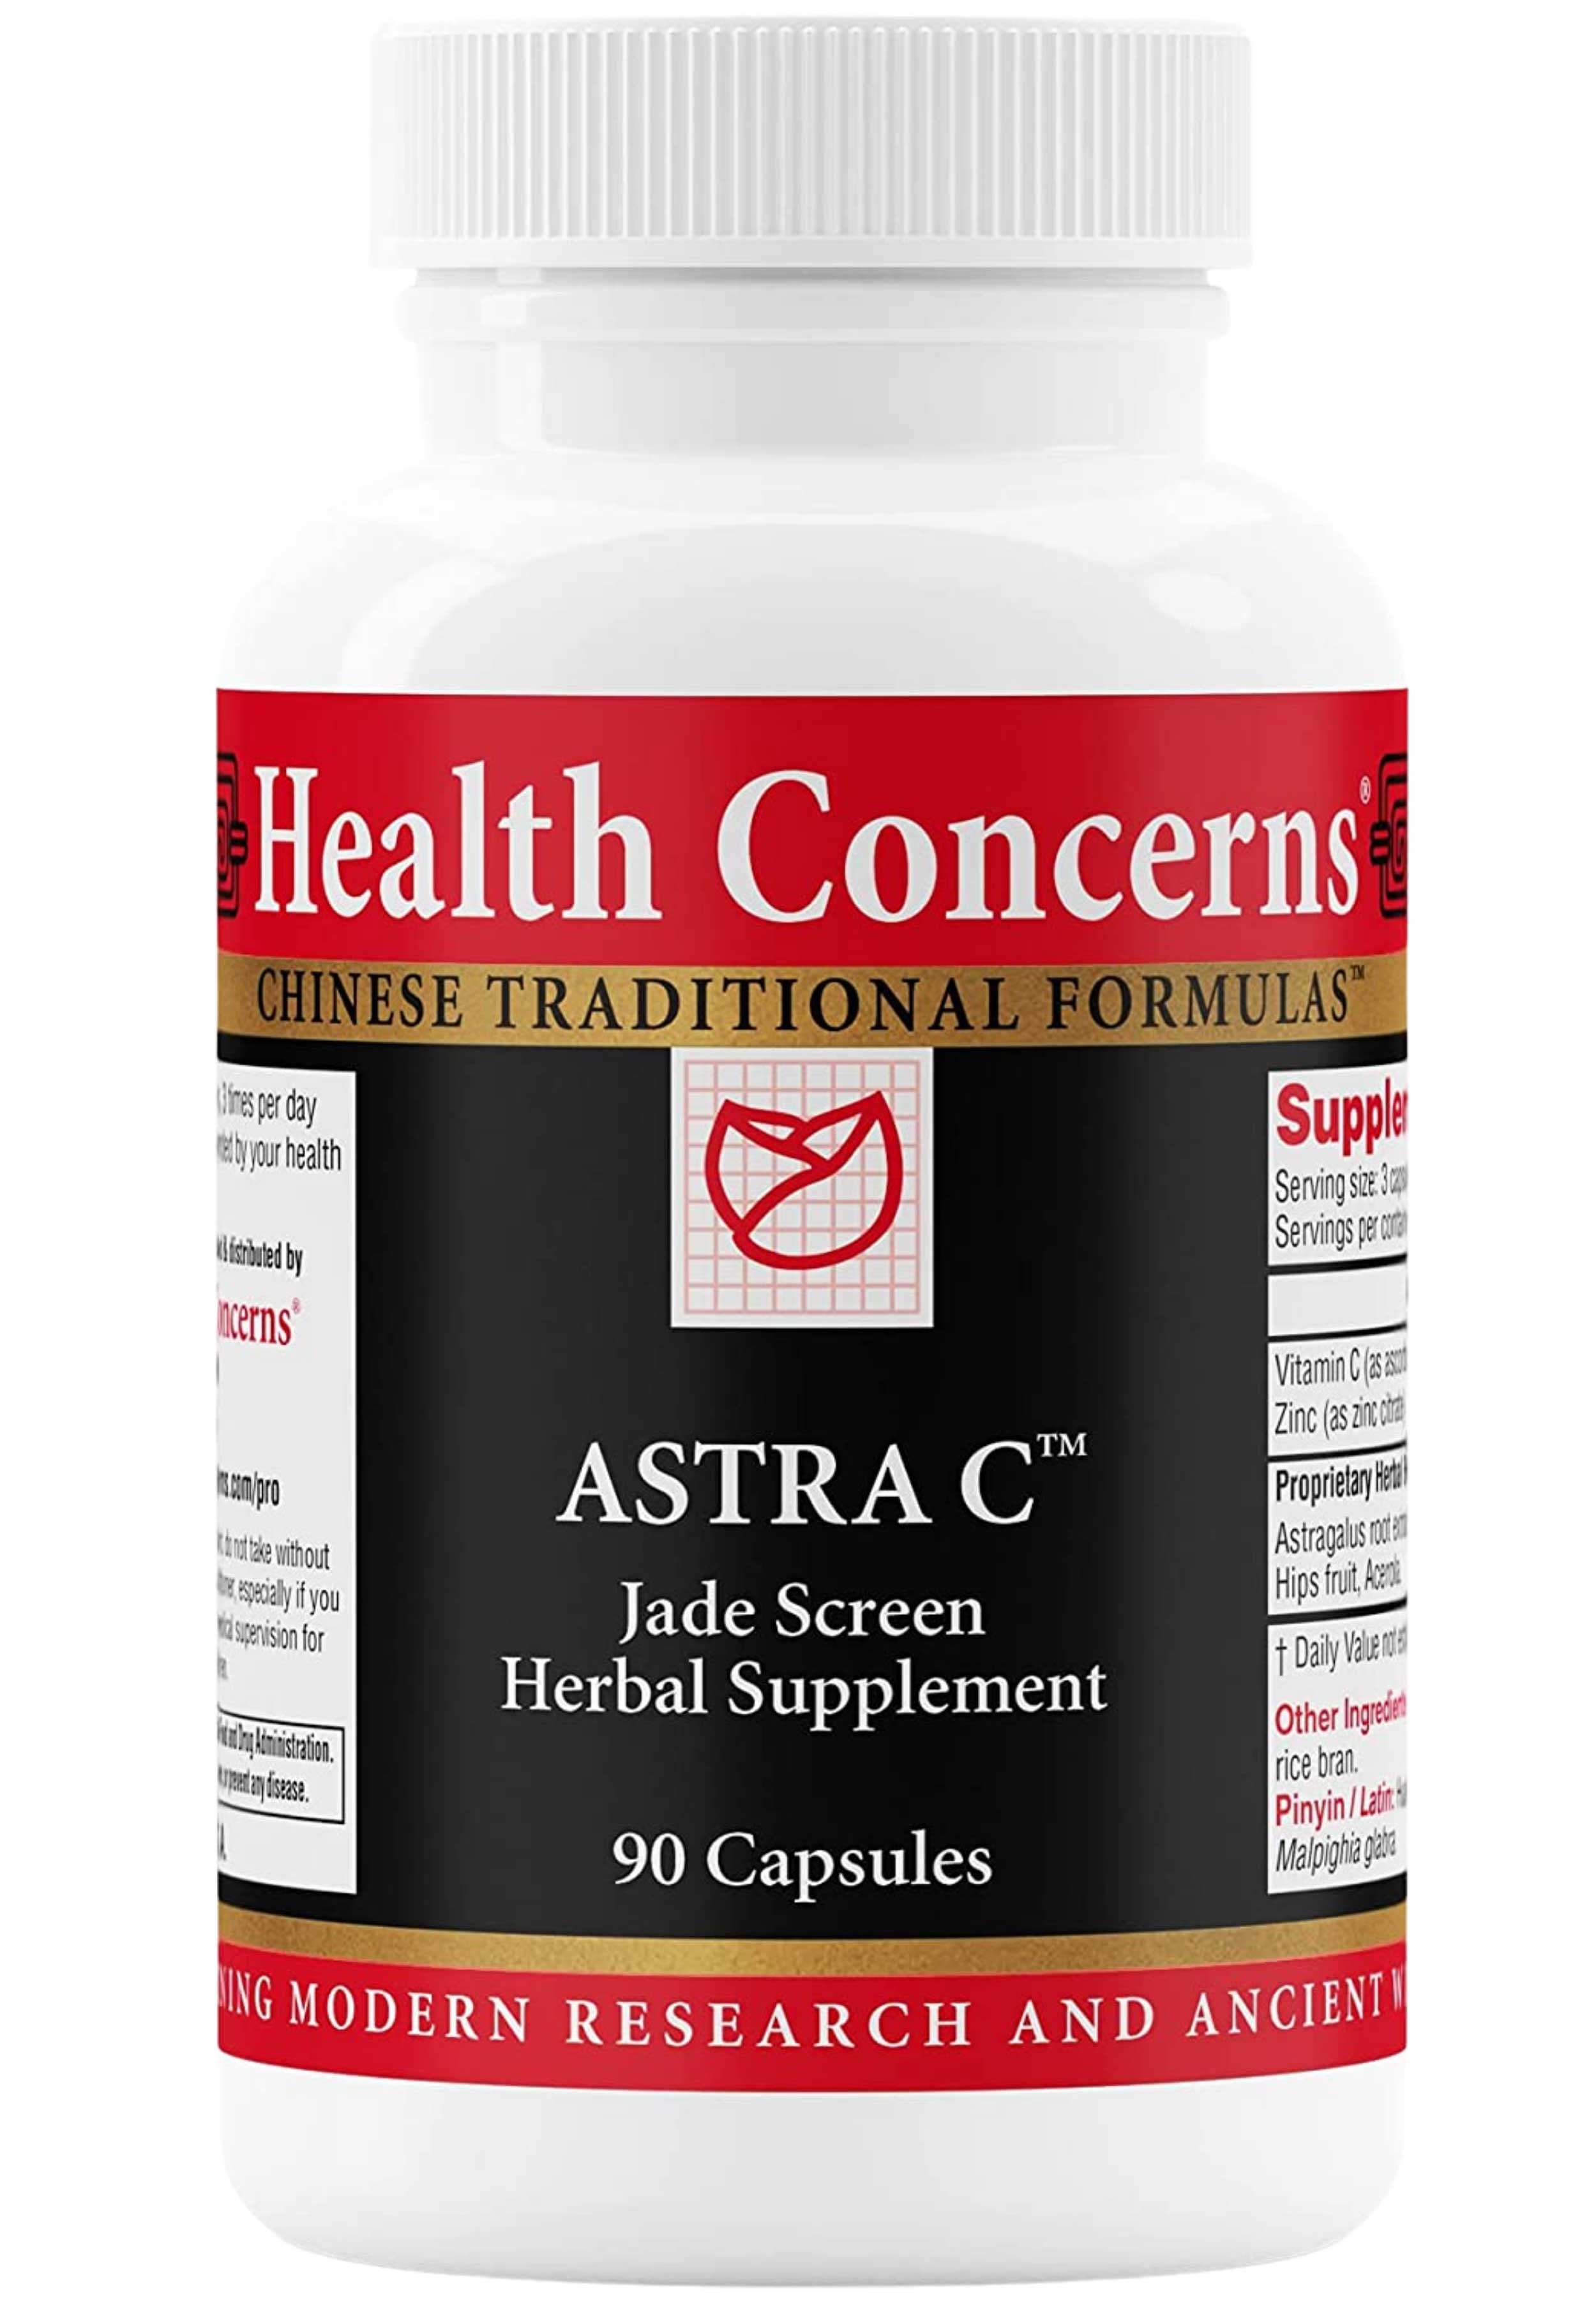 Health Concerns Astra C